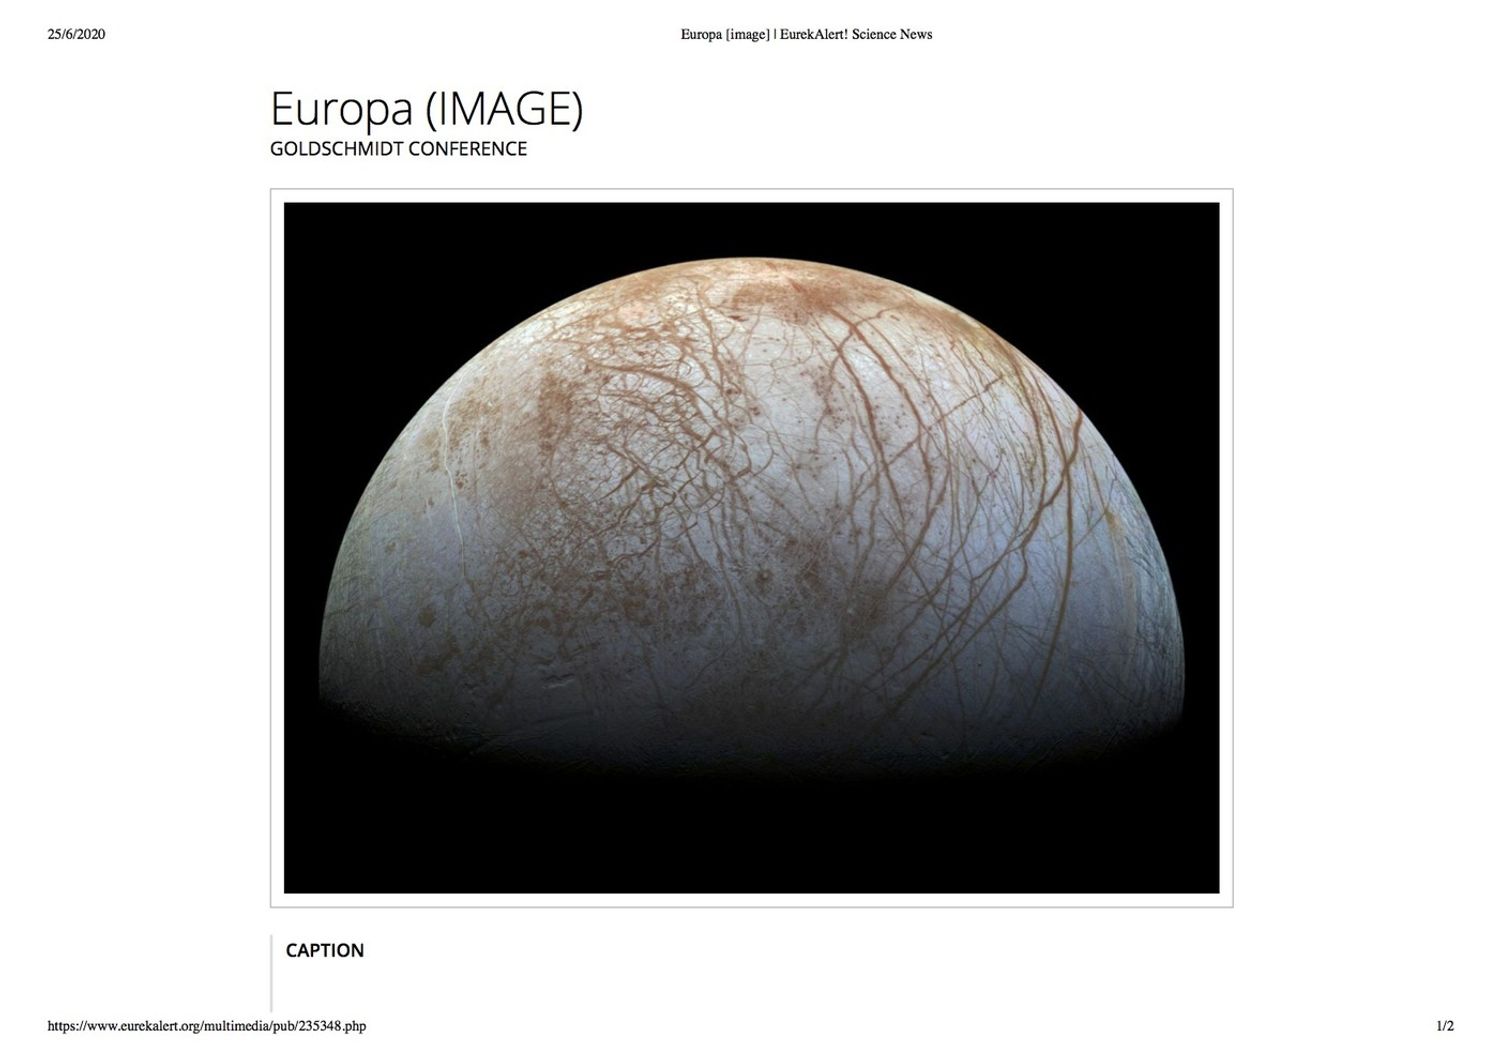 La superficie mozzafiato della luna di Giove, Europa. L'immagine ad alta risoluzione &egrave; disponibile su https://www.jpl.nasa.gov/spaceimages/details.php?id=PIA19048